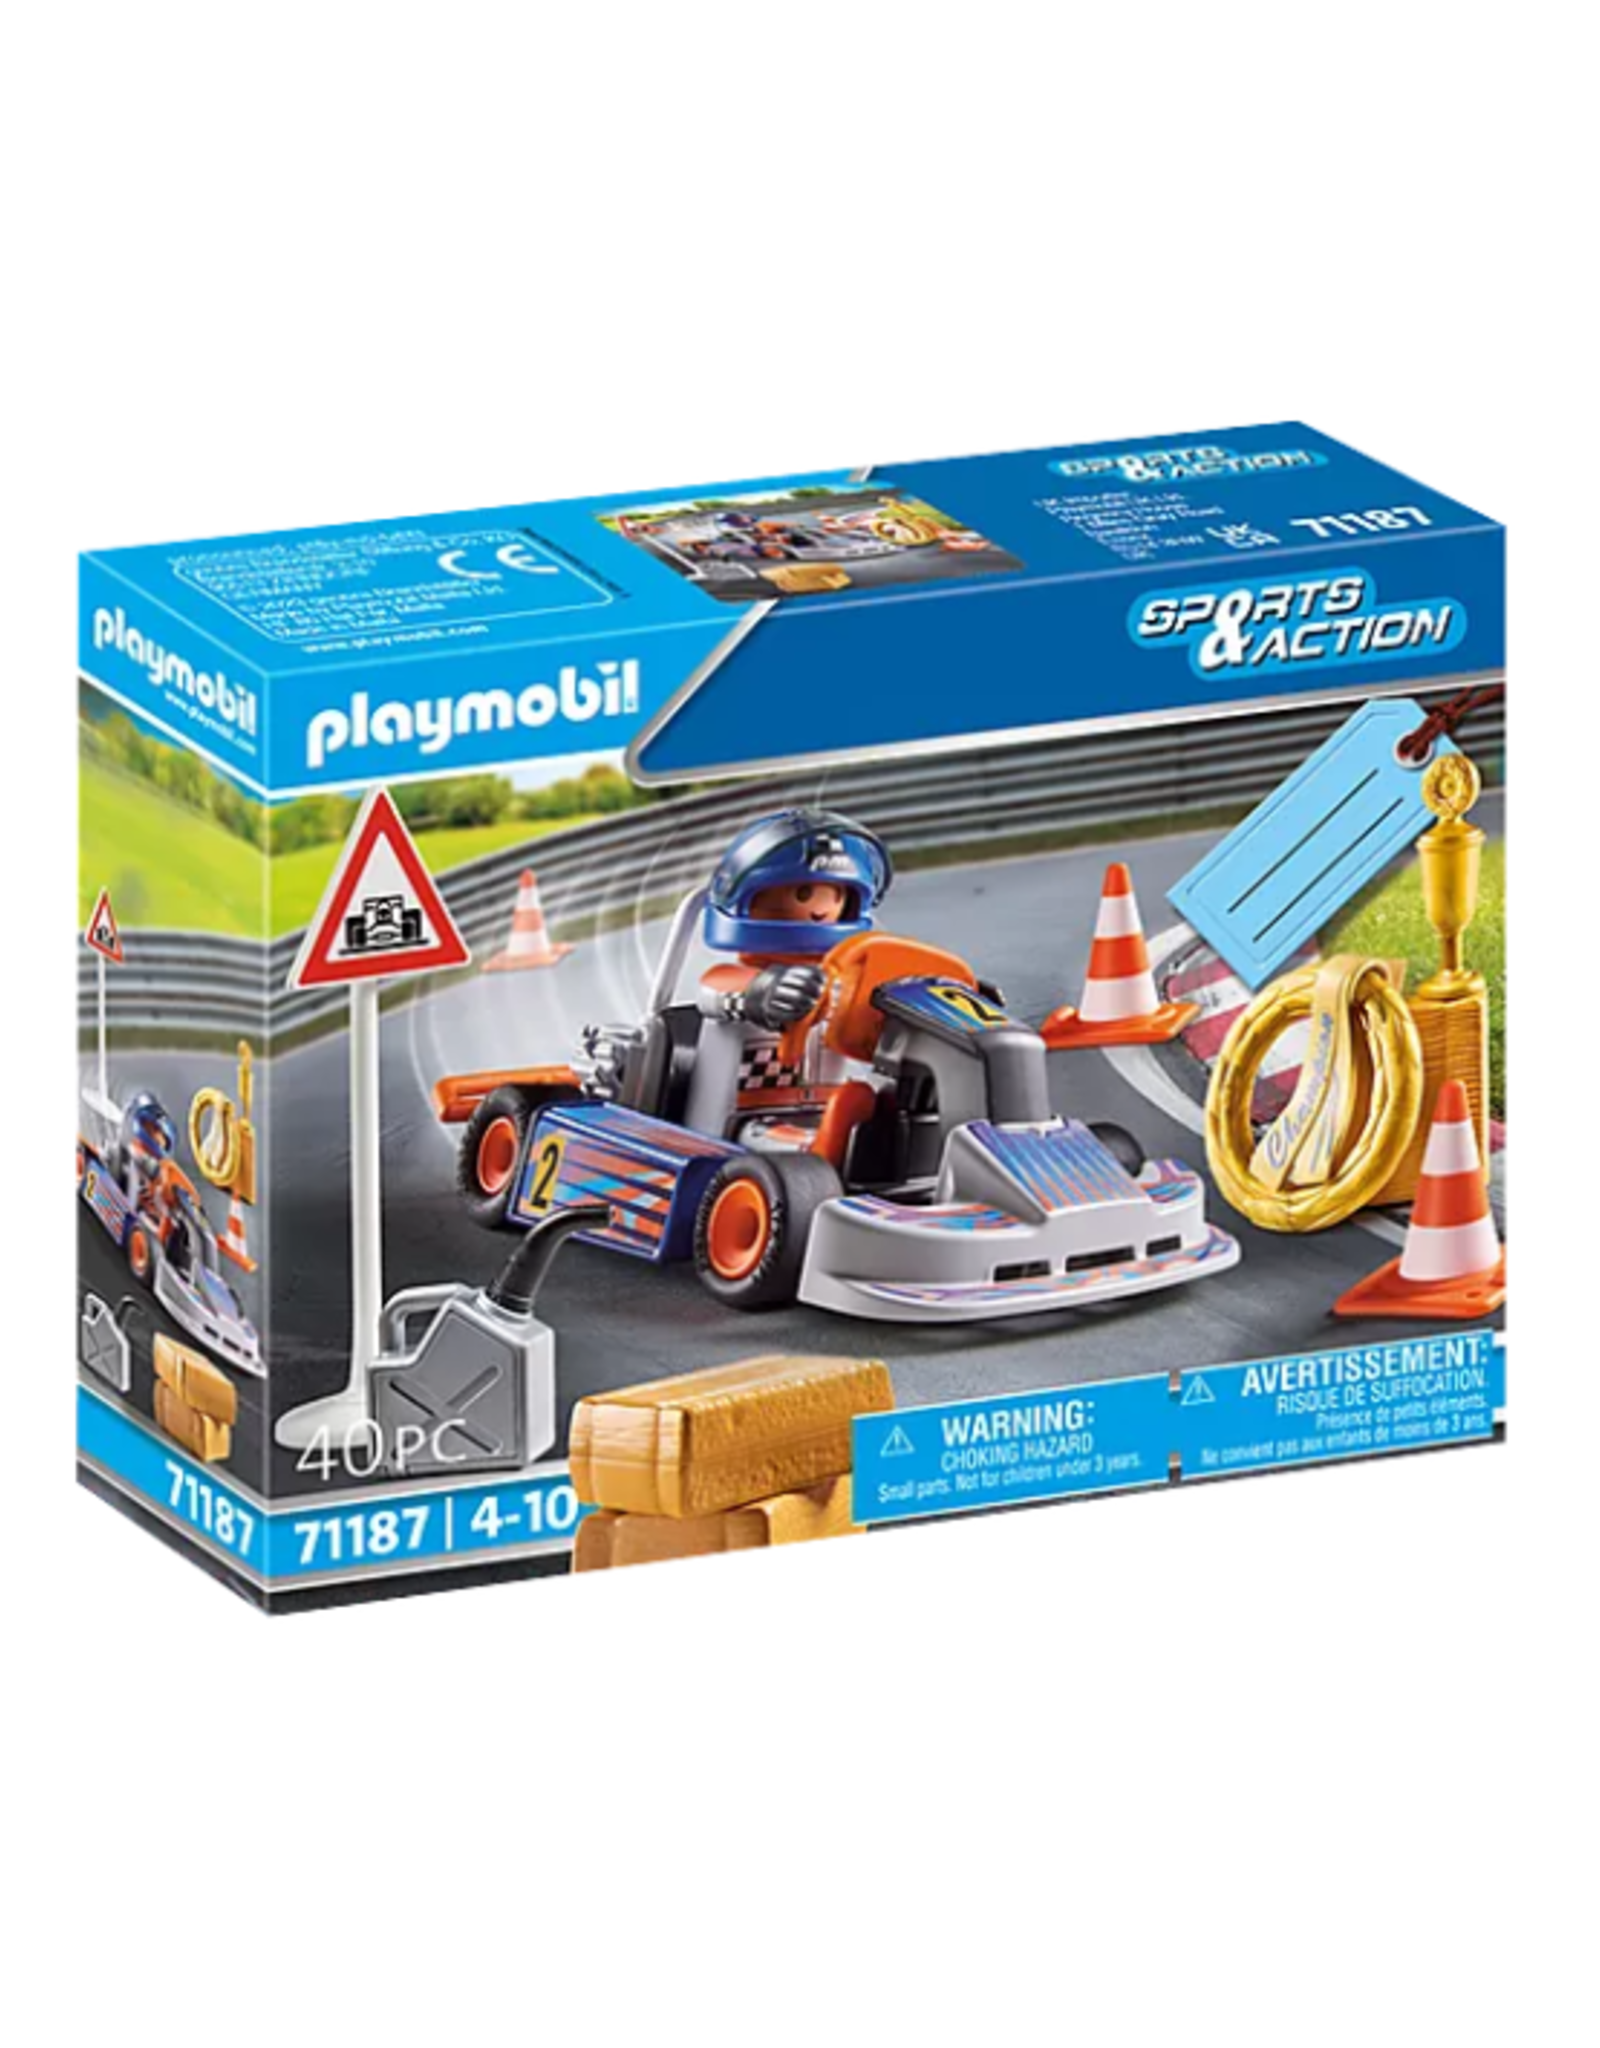 Playmobil Playmobil - Sports & Action - 71187 - Go-Kart Racer Gift Set